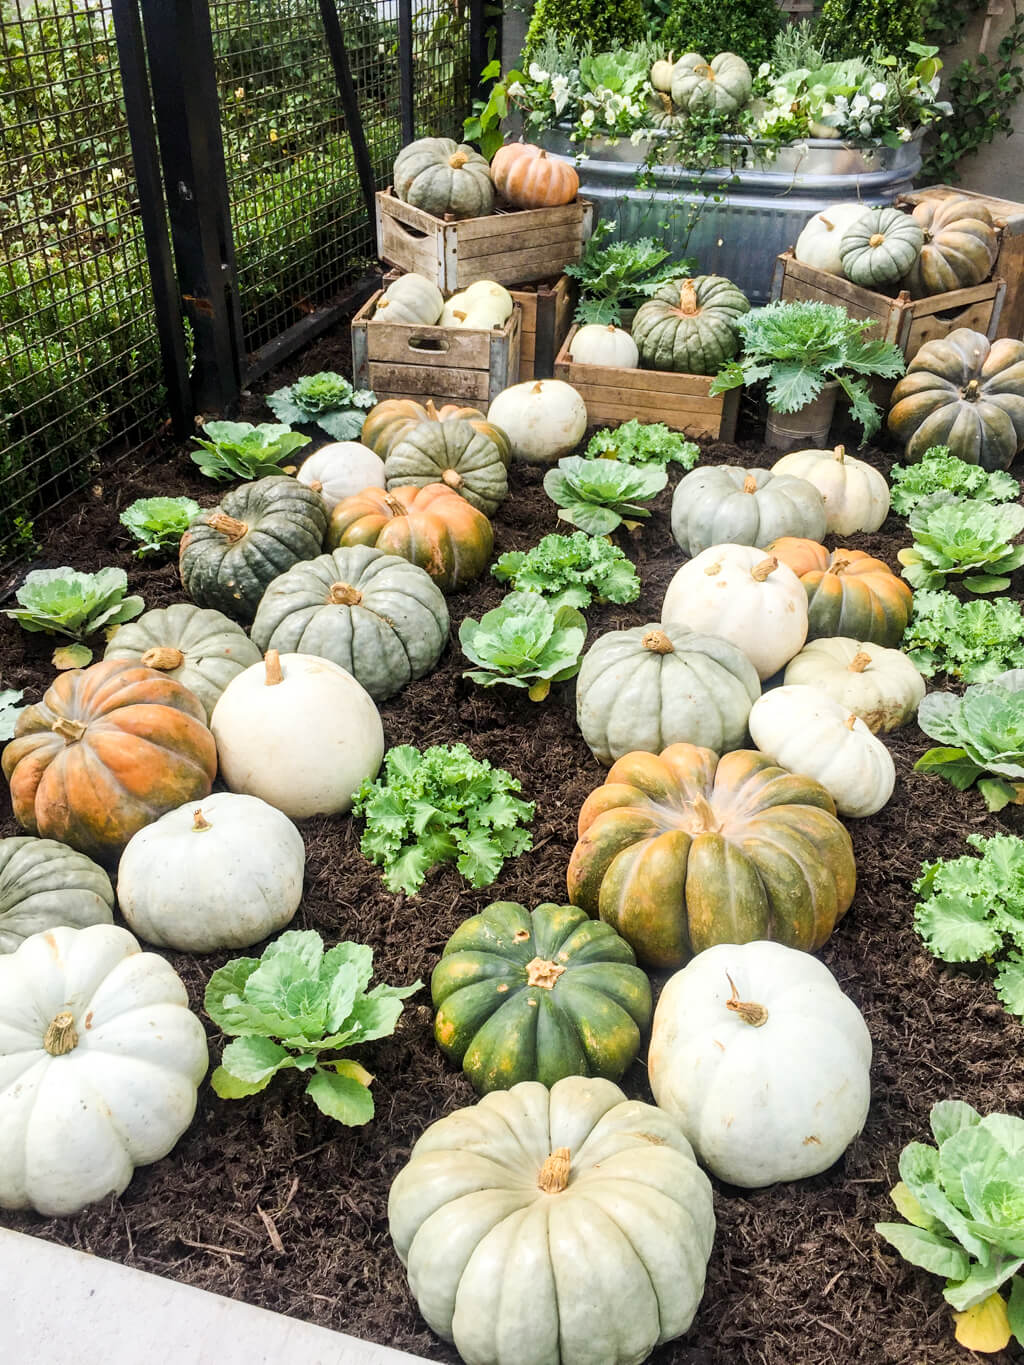 Fall pumpkin display at Magnolia Market and Silos, Waco, TX